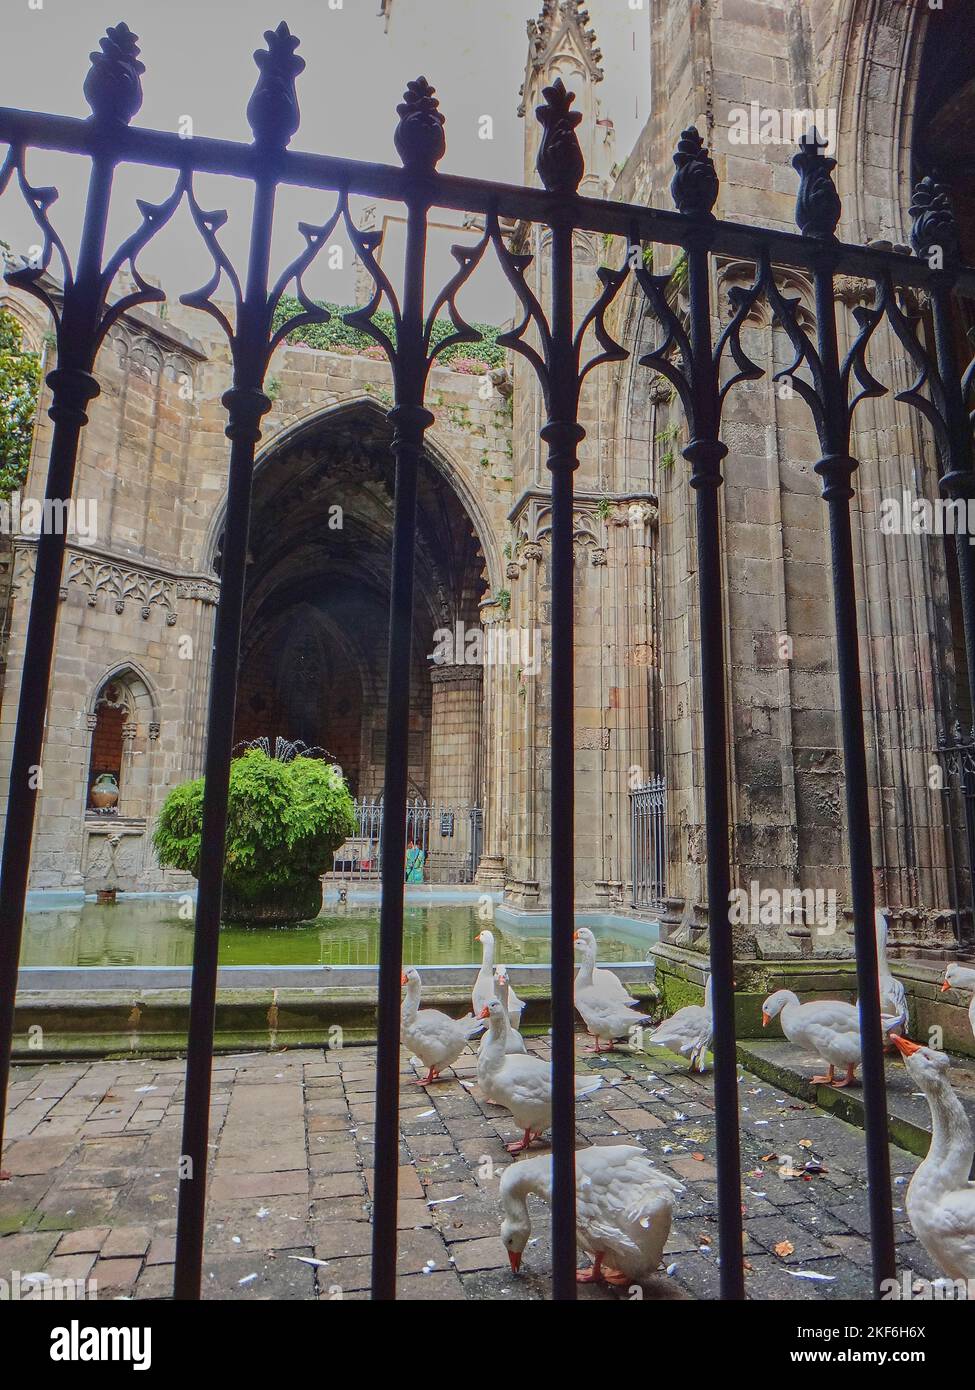 Barcelona, Spanien - 06 15 2014: Gänse leben in der Kathedrale von Barcelona Stockfoto